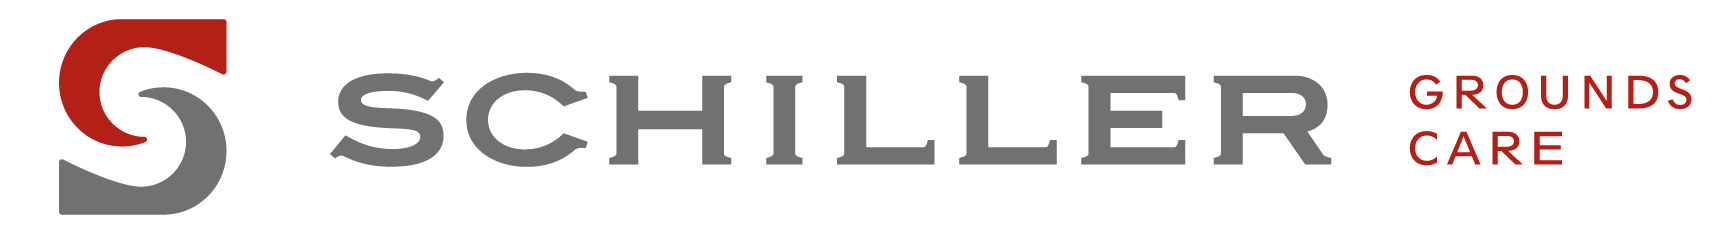 Logo for Schiller Grounds Care